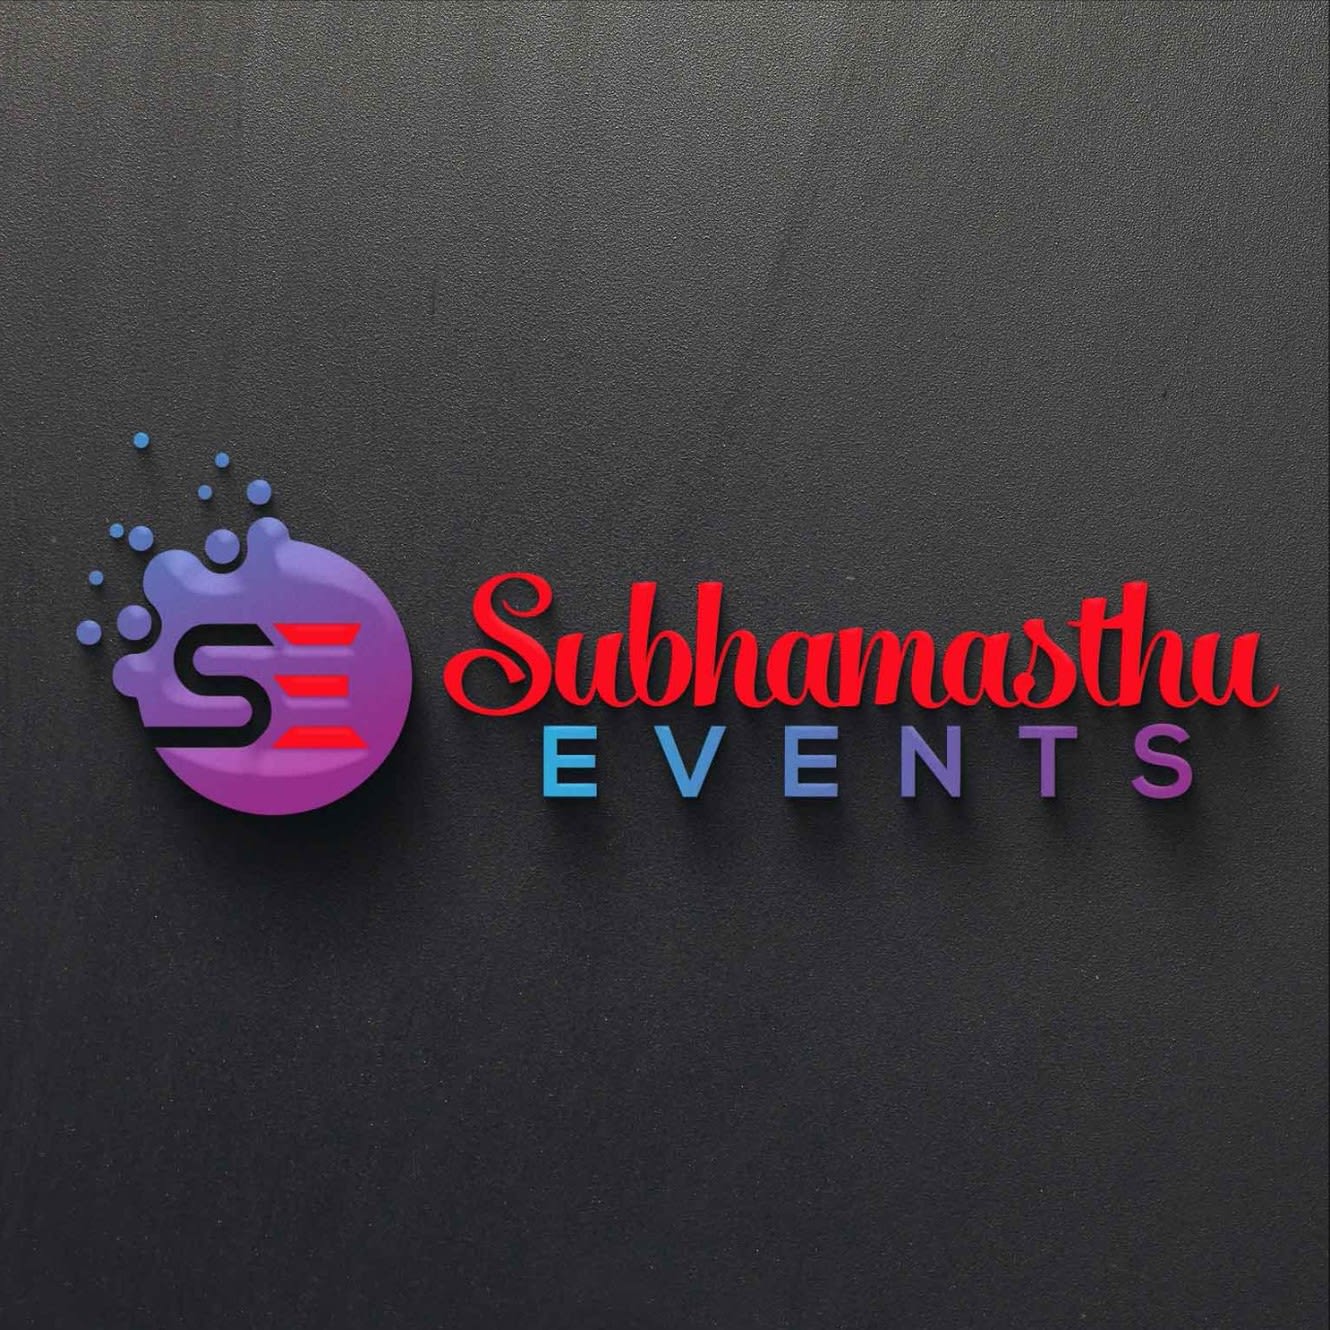 Shubhamasthu Events